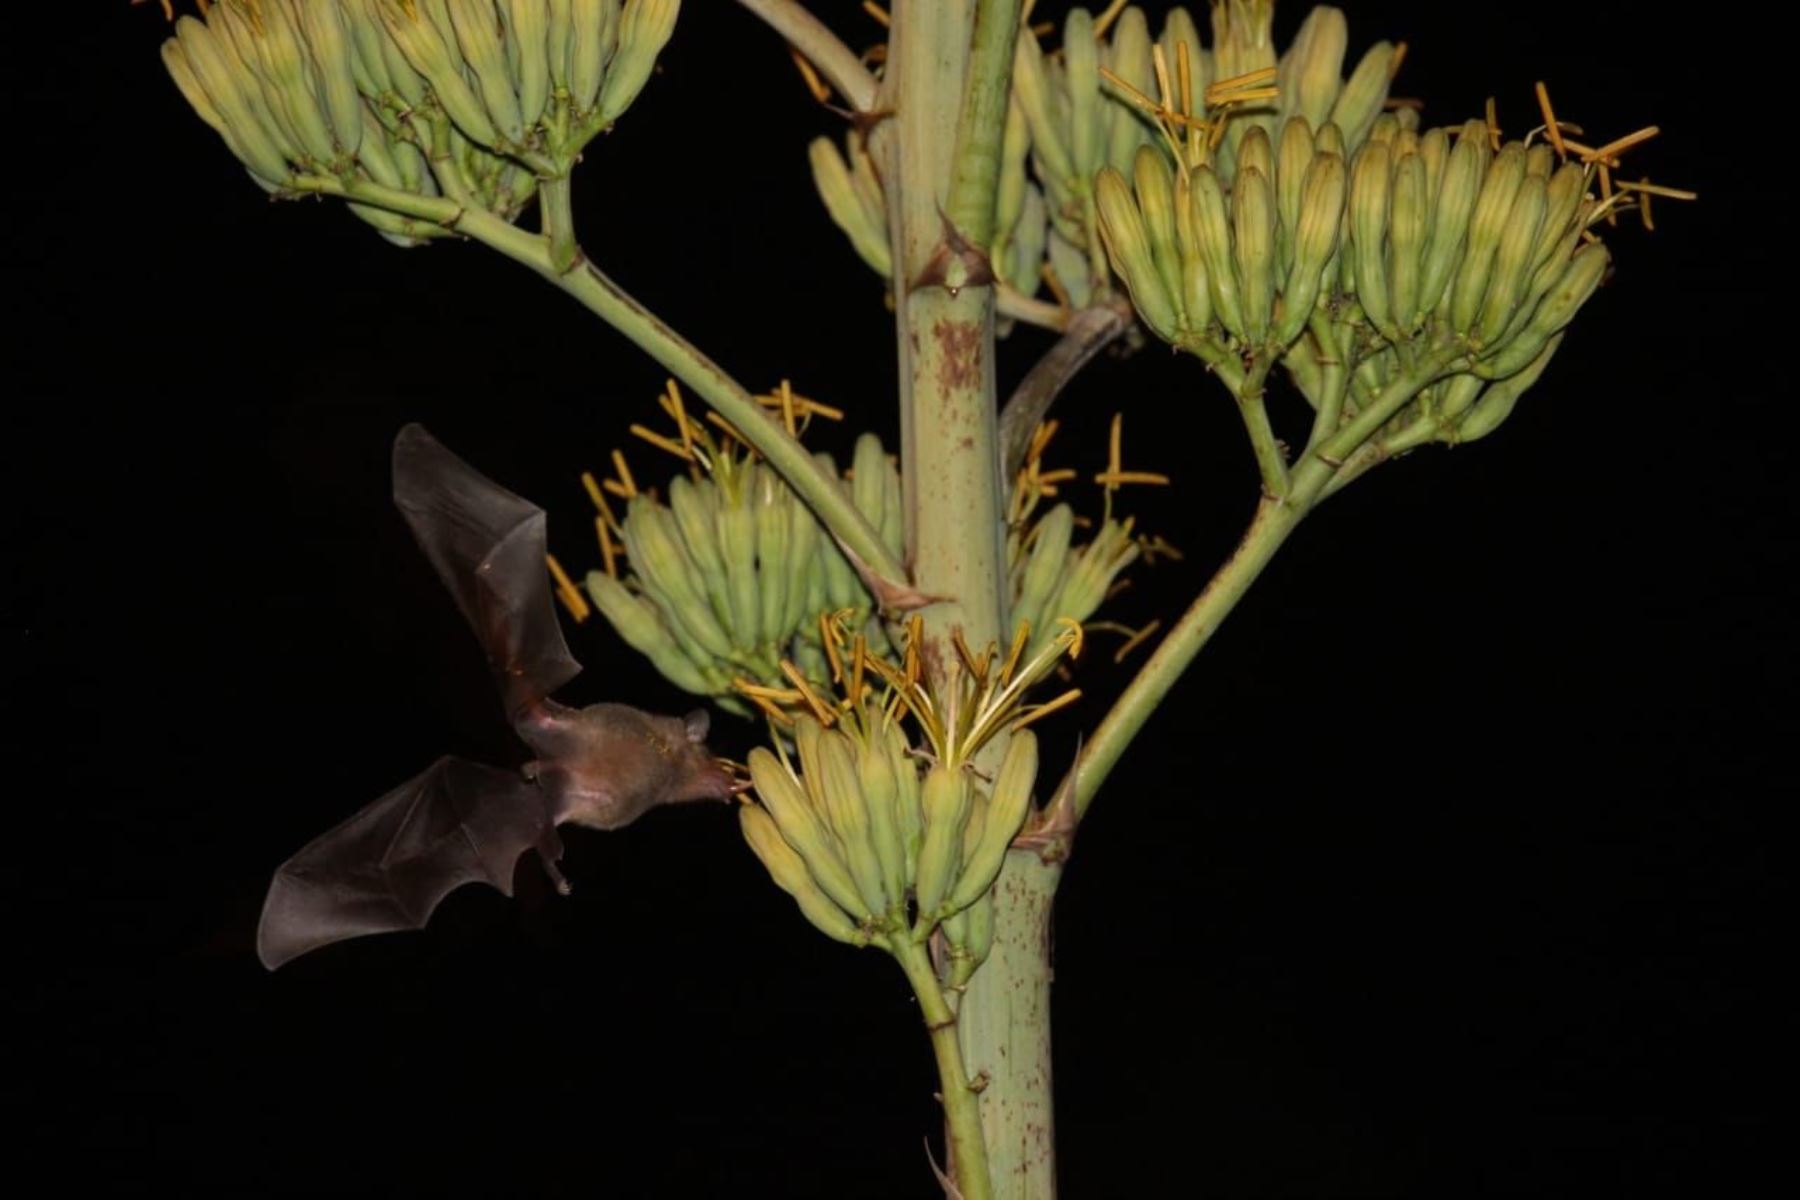 Los murciélagos nectarívoros salen en busca de insectos y del néctar de las flores, y cumplen importantes funciones en los ecosistemas. Foto: ANDINA/Municipalidad de Miraflores